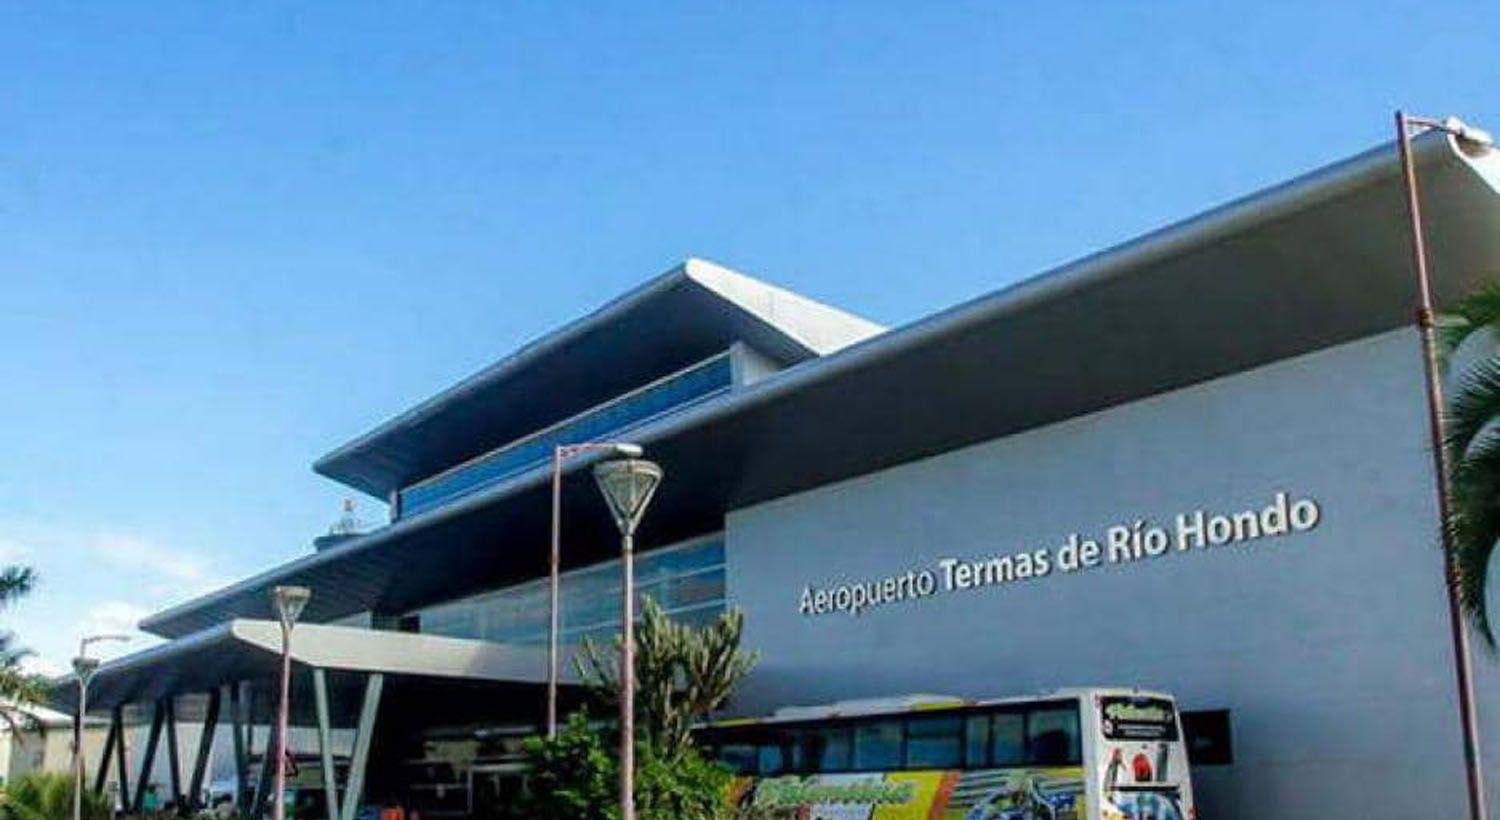 El gobernador recordoacute al Aeropuerto de Las Termas de Riacuteo Hondo por un nuevo aniversario